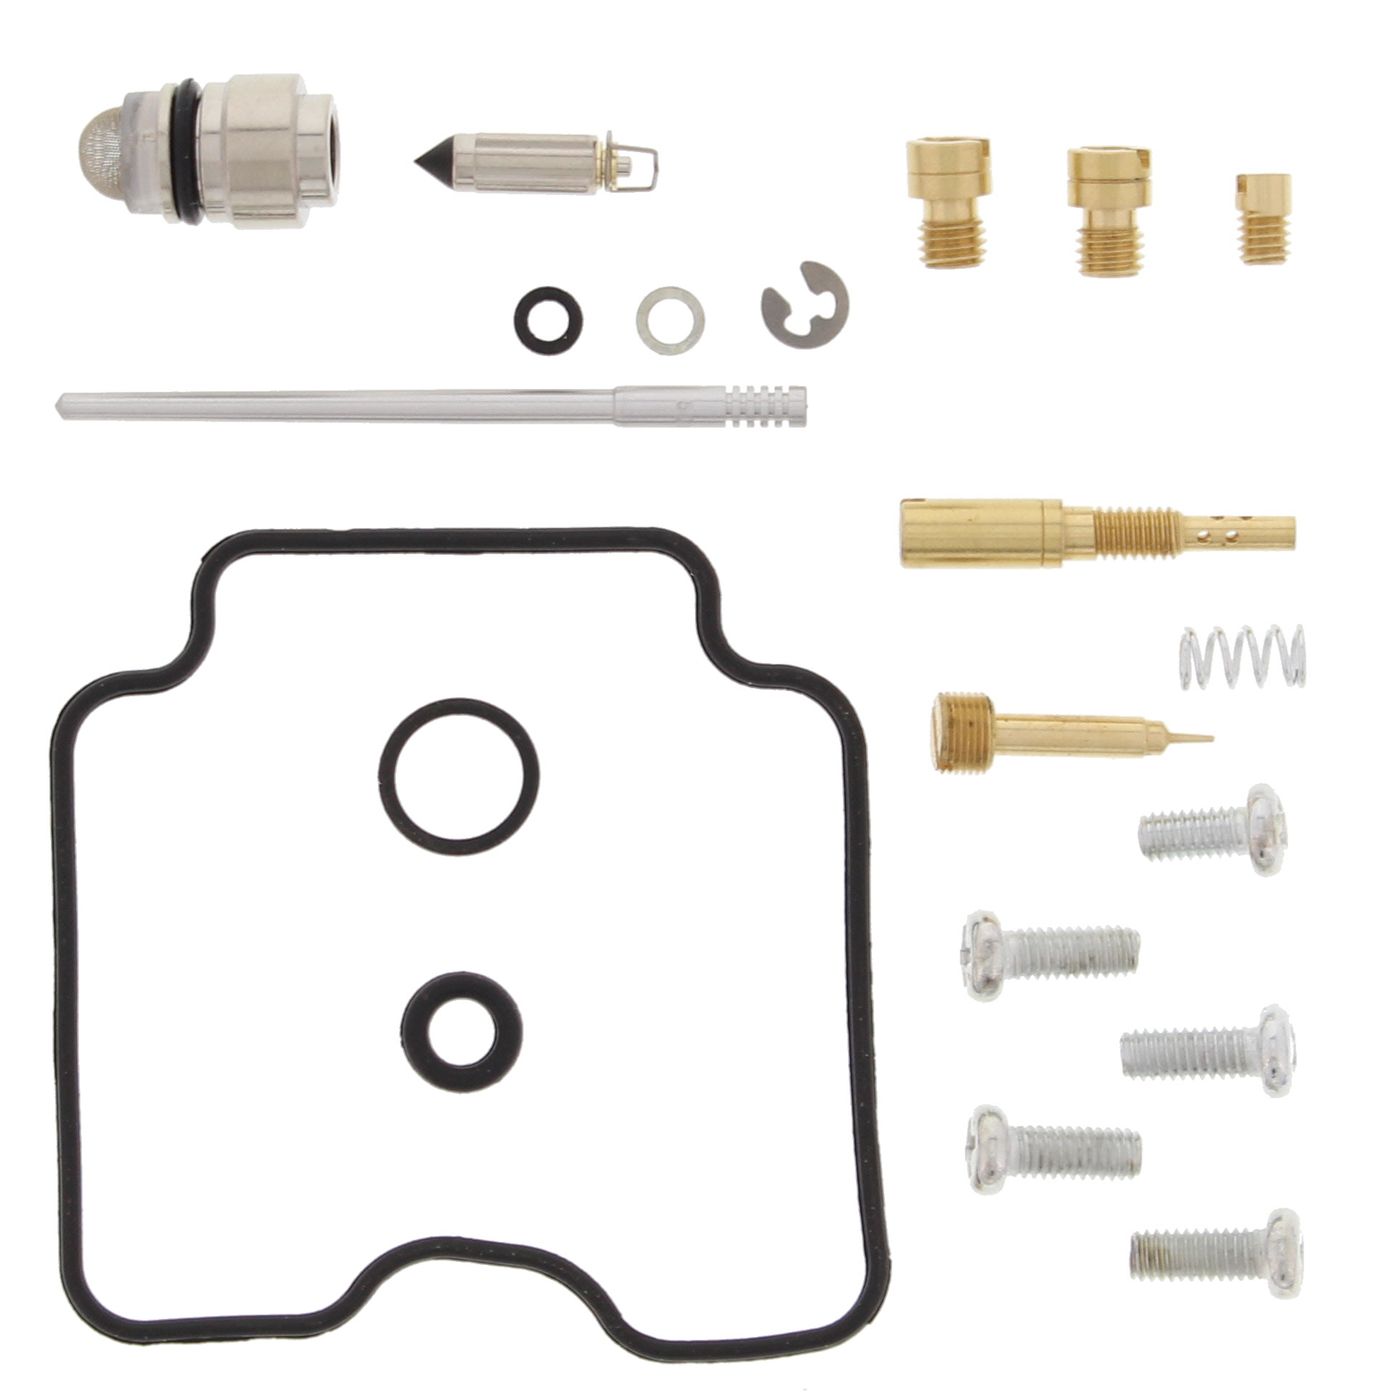 Wrp Carb Repair Kits - WRP261095 image